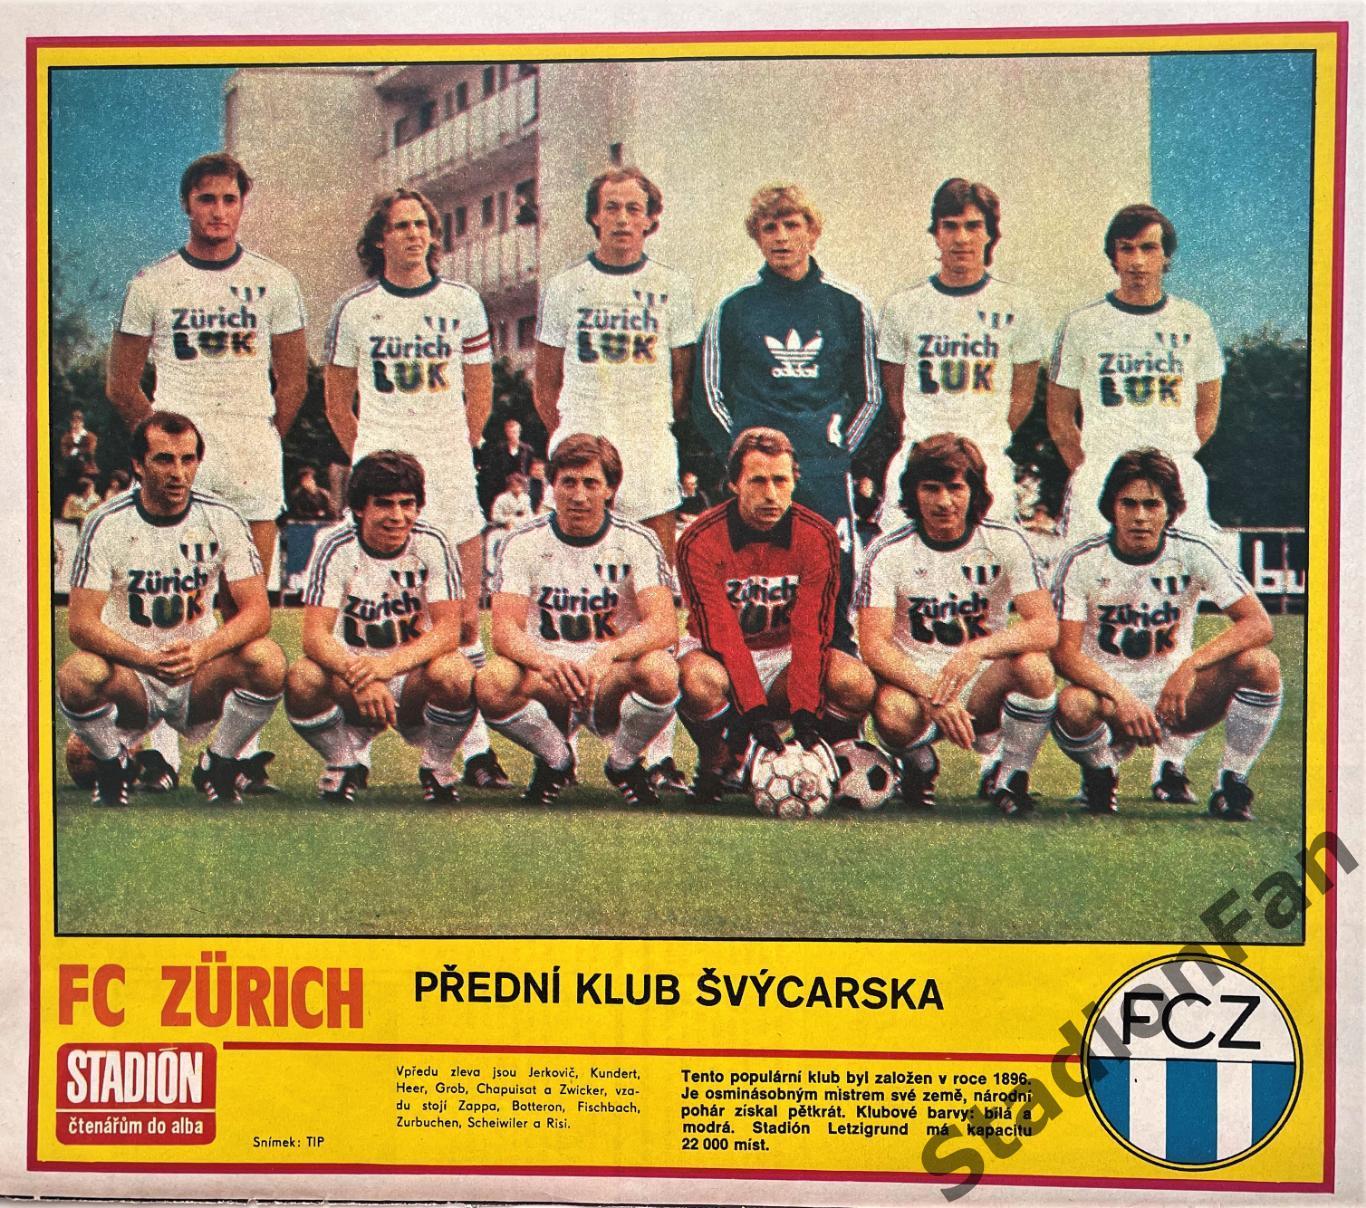 Постер из журнала Стадион (Stadion) - Zurich, 1980.